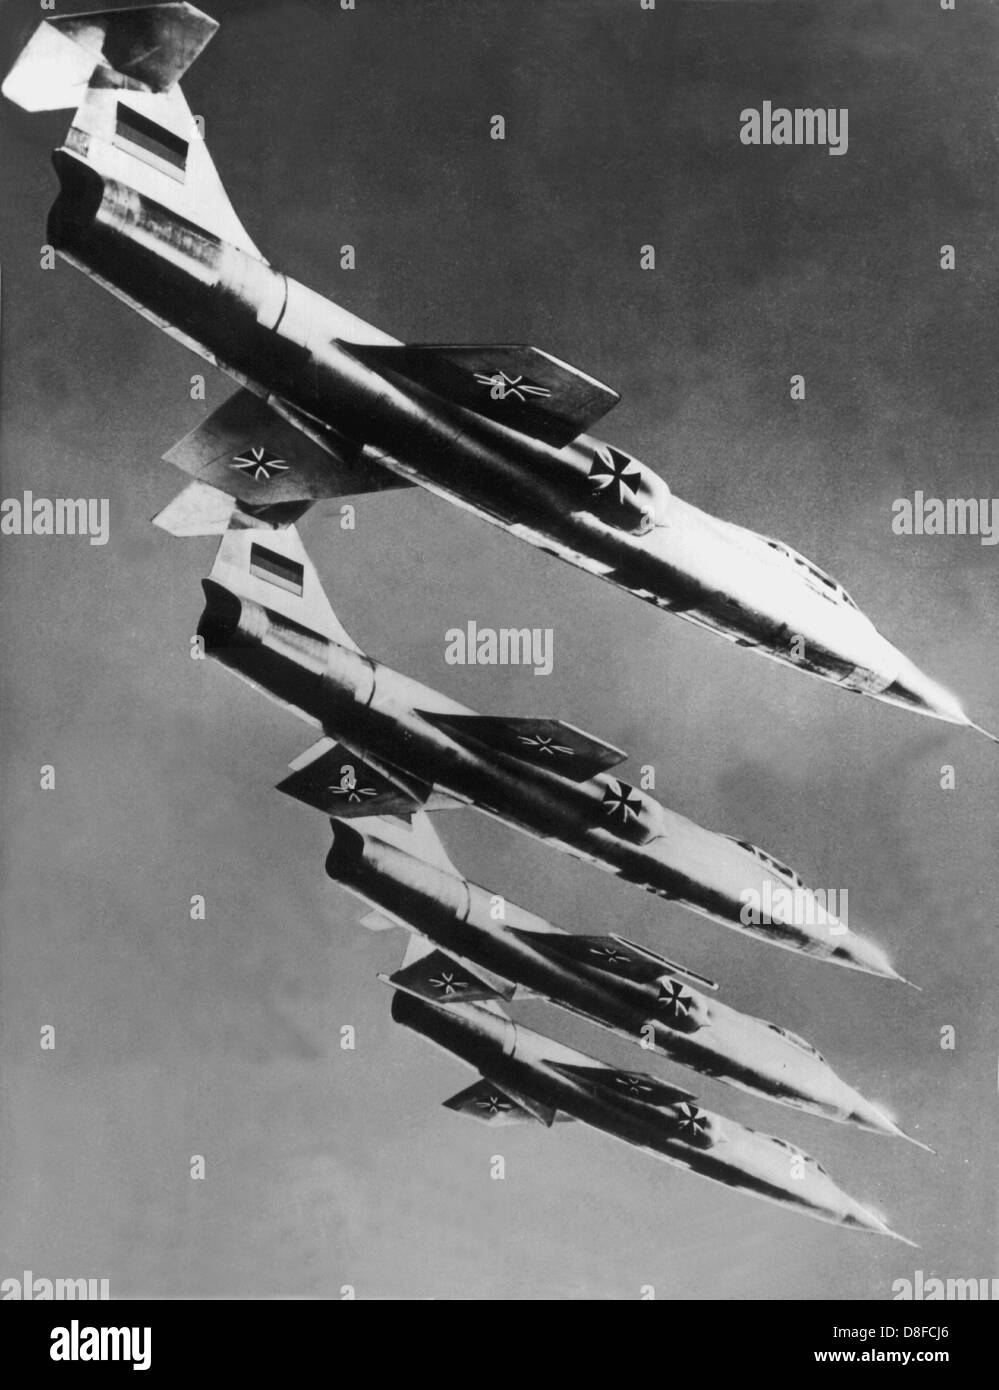 Quatre machines du type Starfighter F 104 F pendant un vol en formation. L'escadron acrobatique de l'armée allemande s'est écrasé le 19 juin en 1962, les pilotes sont morts. Banque D'Images